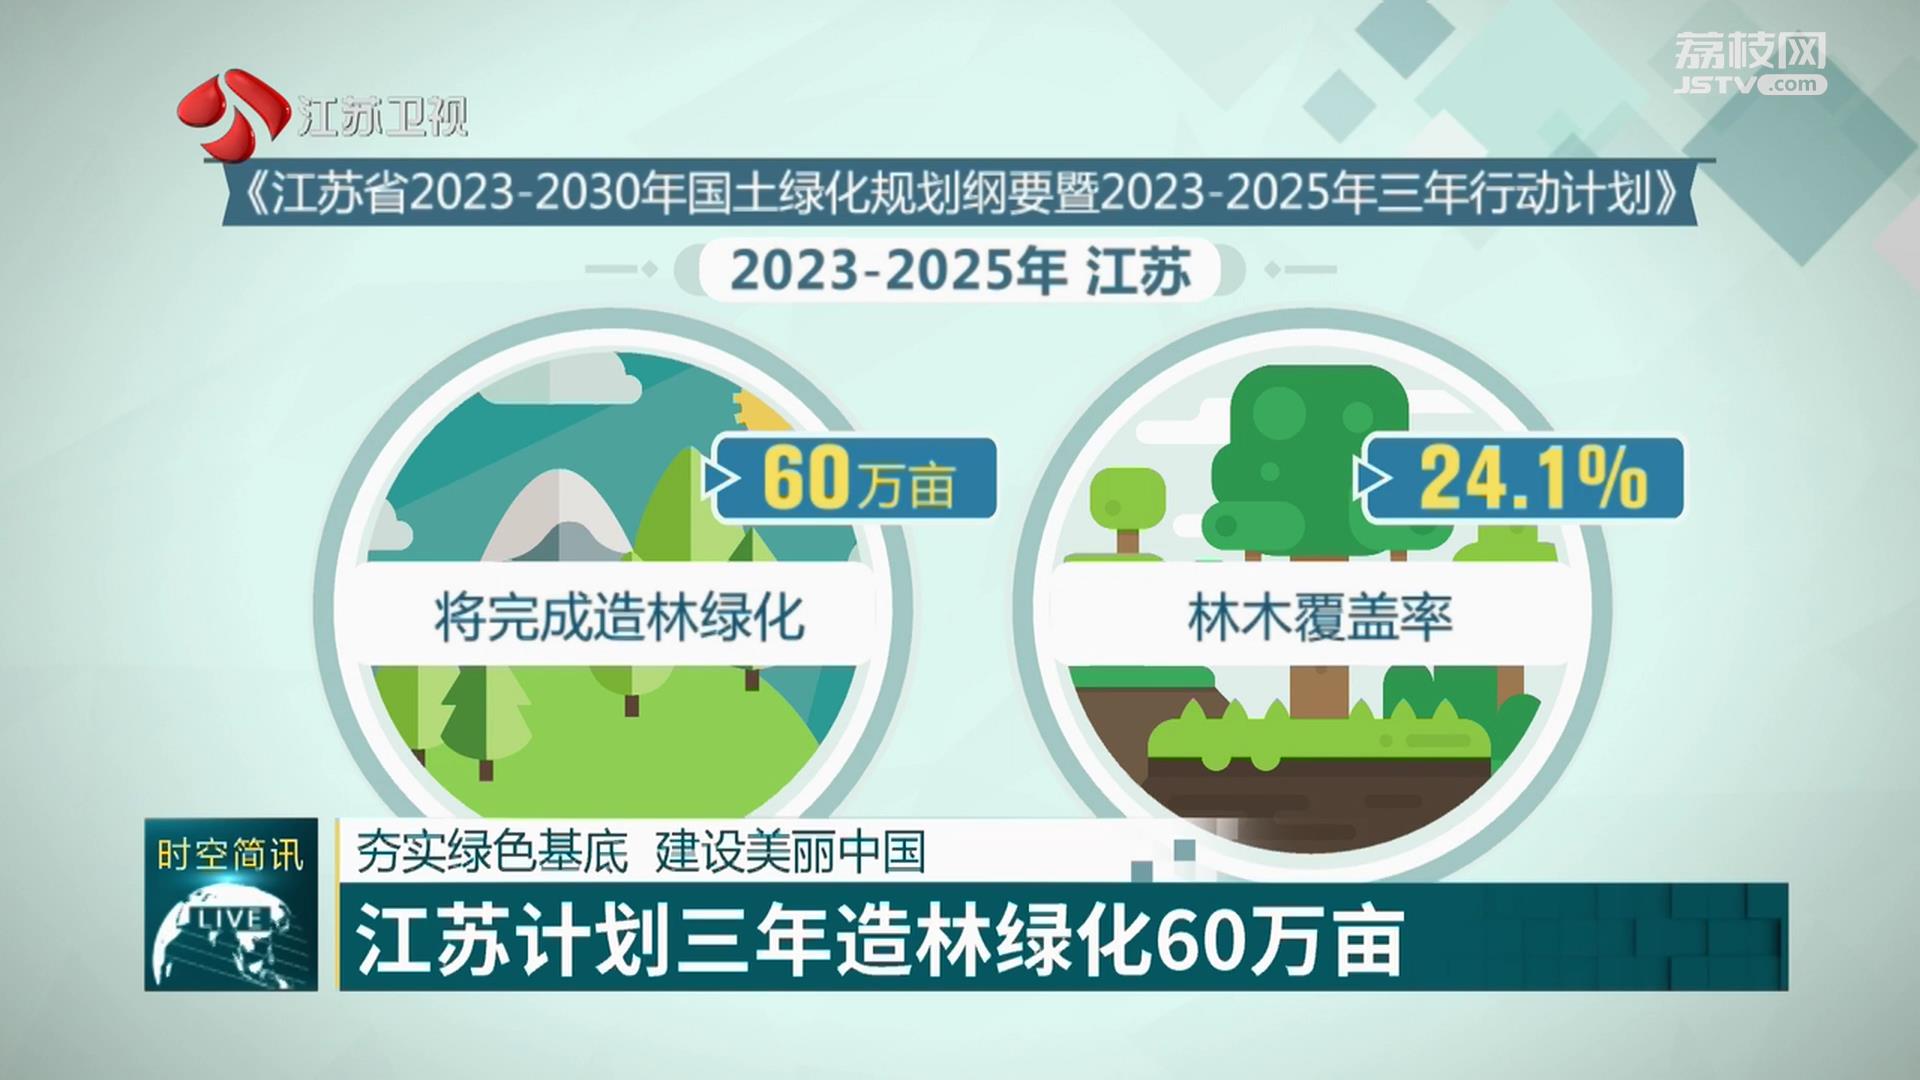 夯实绿色基底 建设美丽中国 江苏计划三年造林绿化60万亩